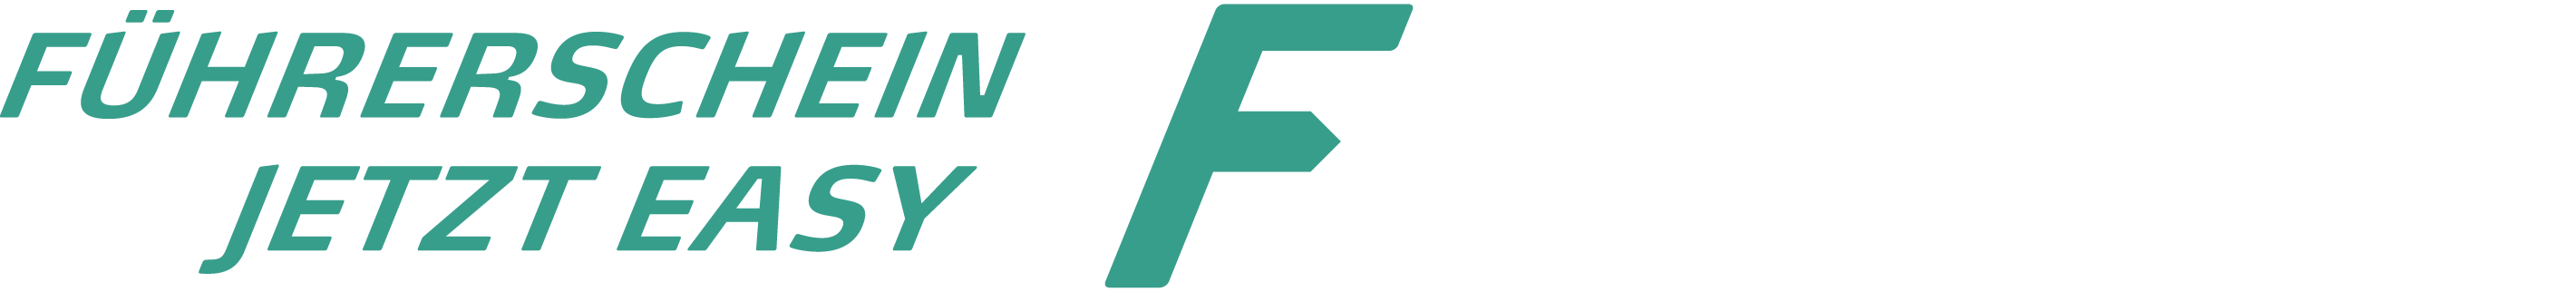 f-easy logo